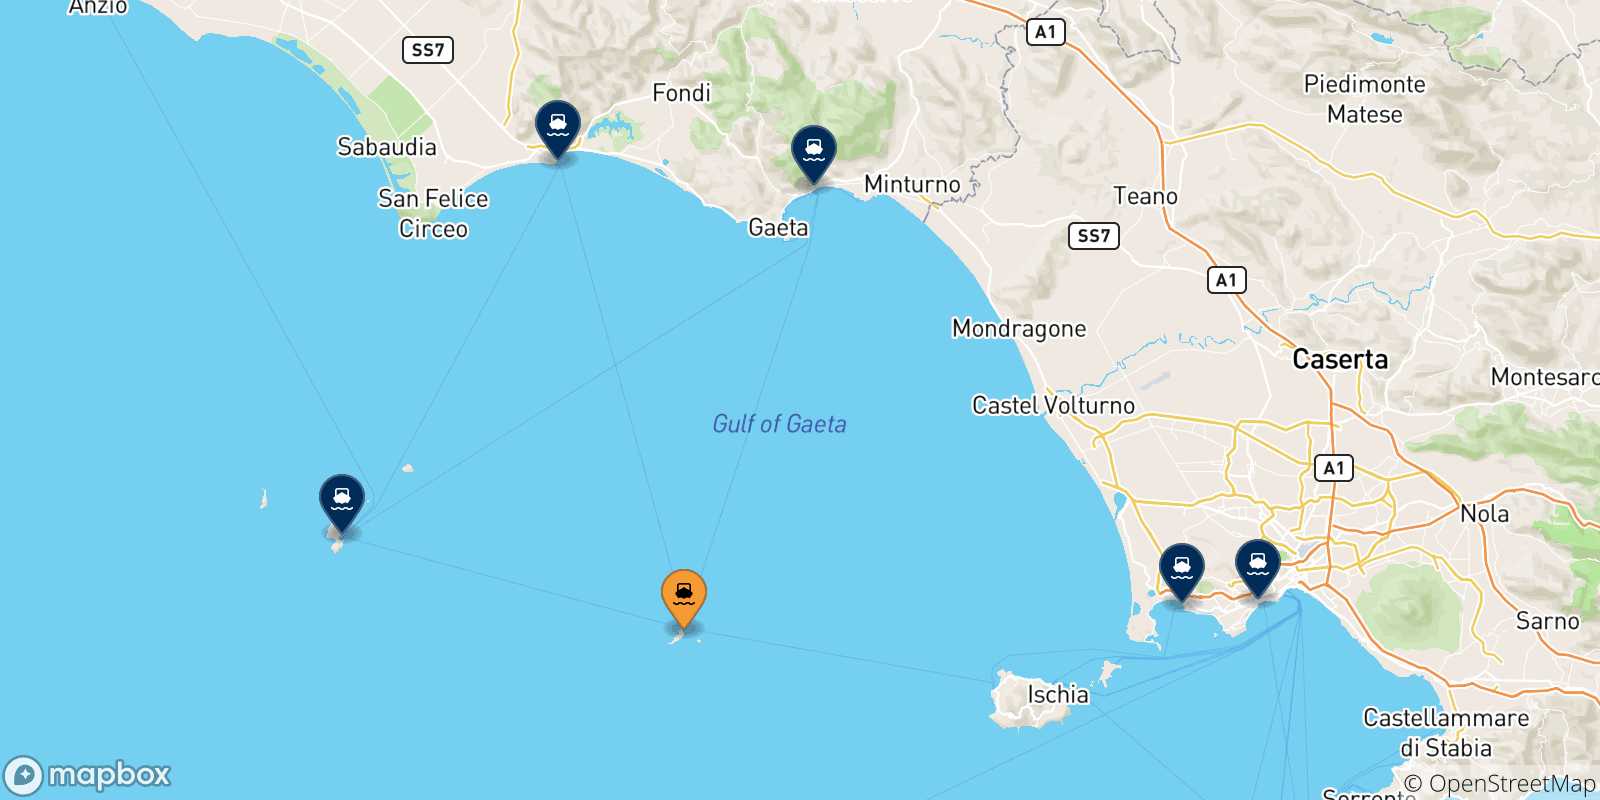 Mappa delle possibili rotte tra Ventotene e l'Italia